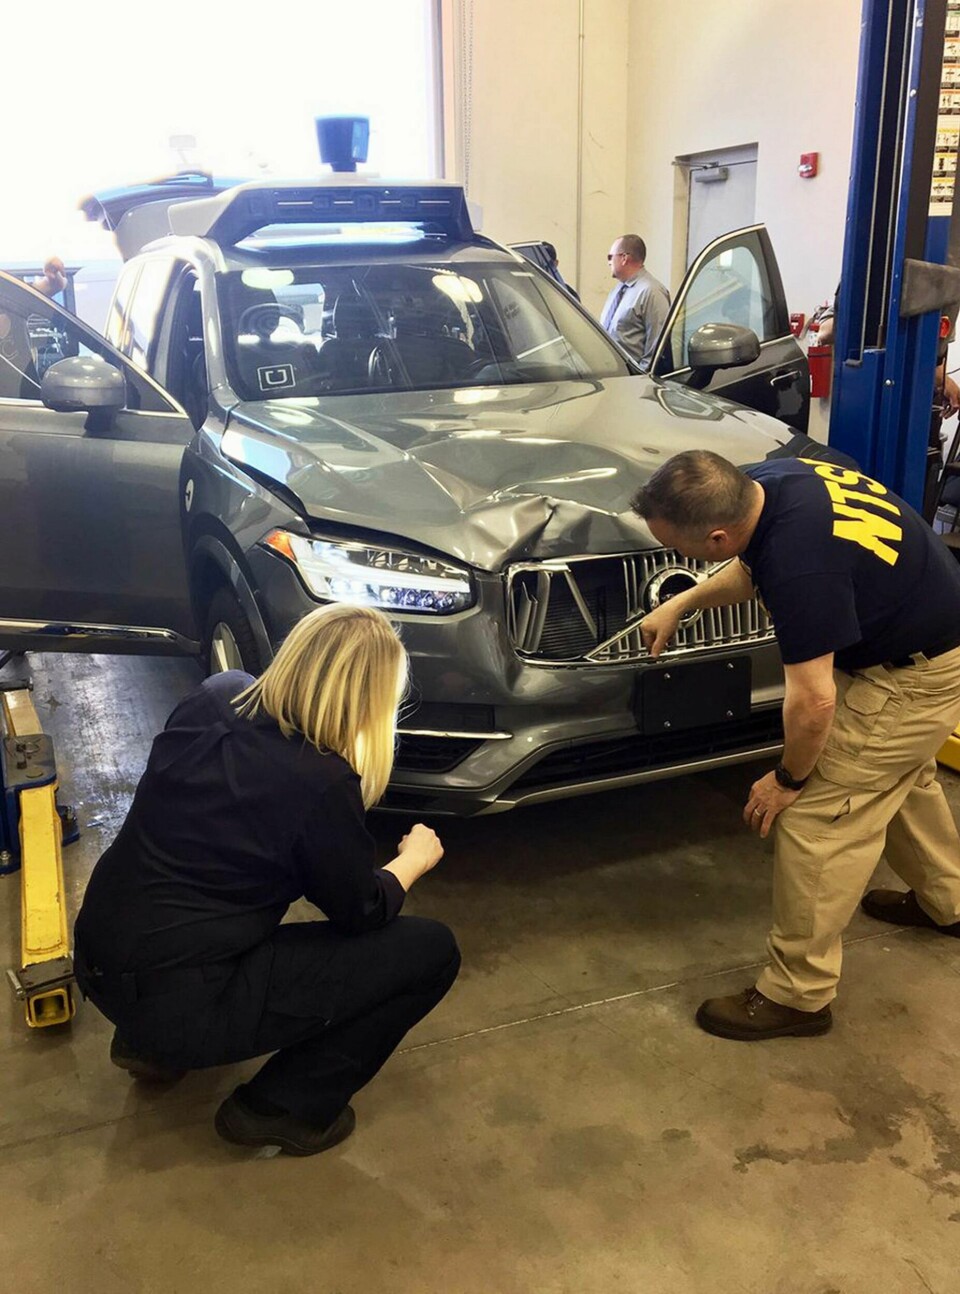 Volvo-suven undersöks av utredare efter dödsolyckan i Arizona. Foto: National Transportation Safety Board via AP / TT